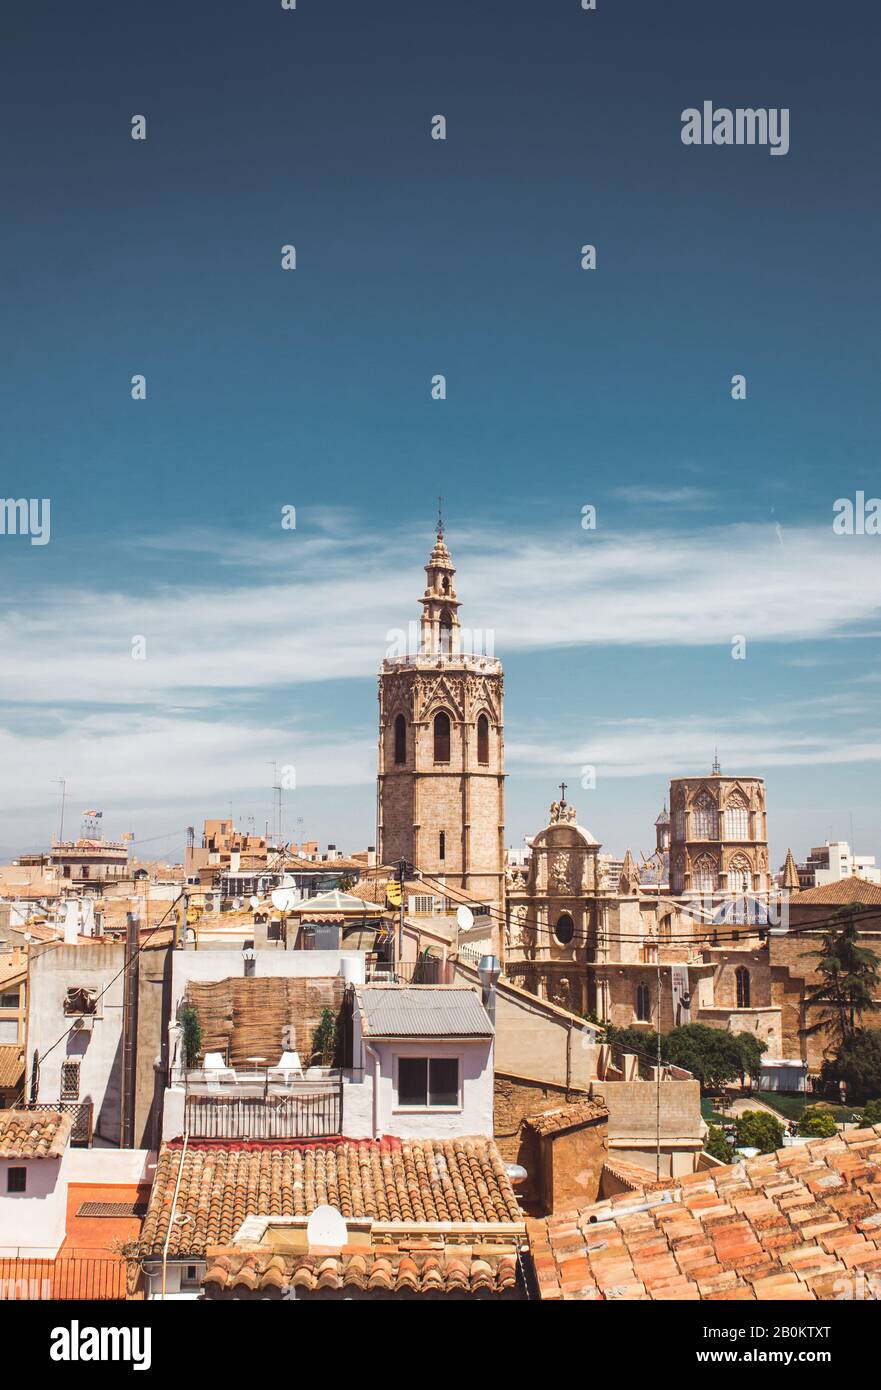 Stock-Foto von einer schönen Aussicht auf Torre del Micalet. Kathedrale aus dem 13. Jahrhundert in Valencia, Spanien Stockfoto